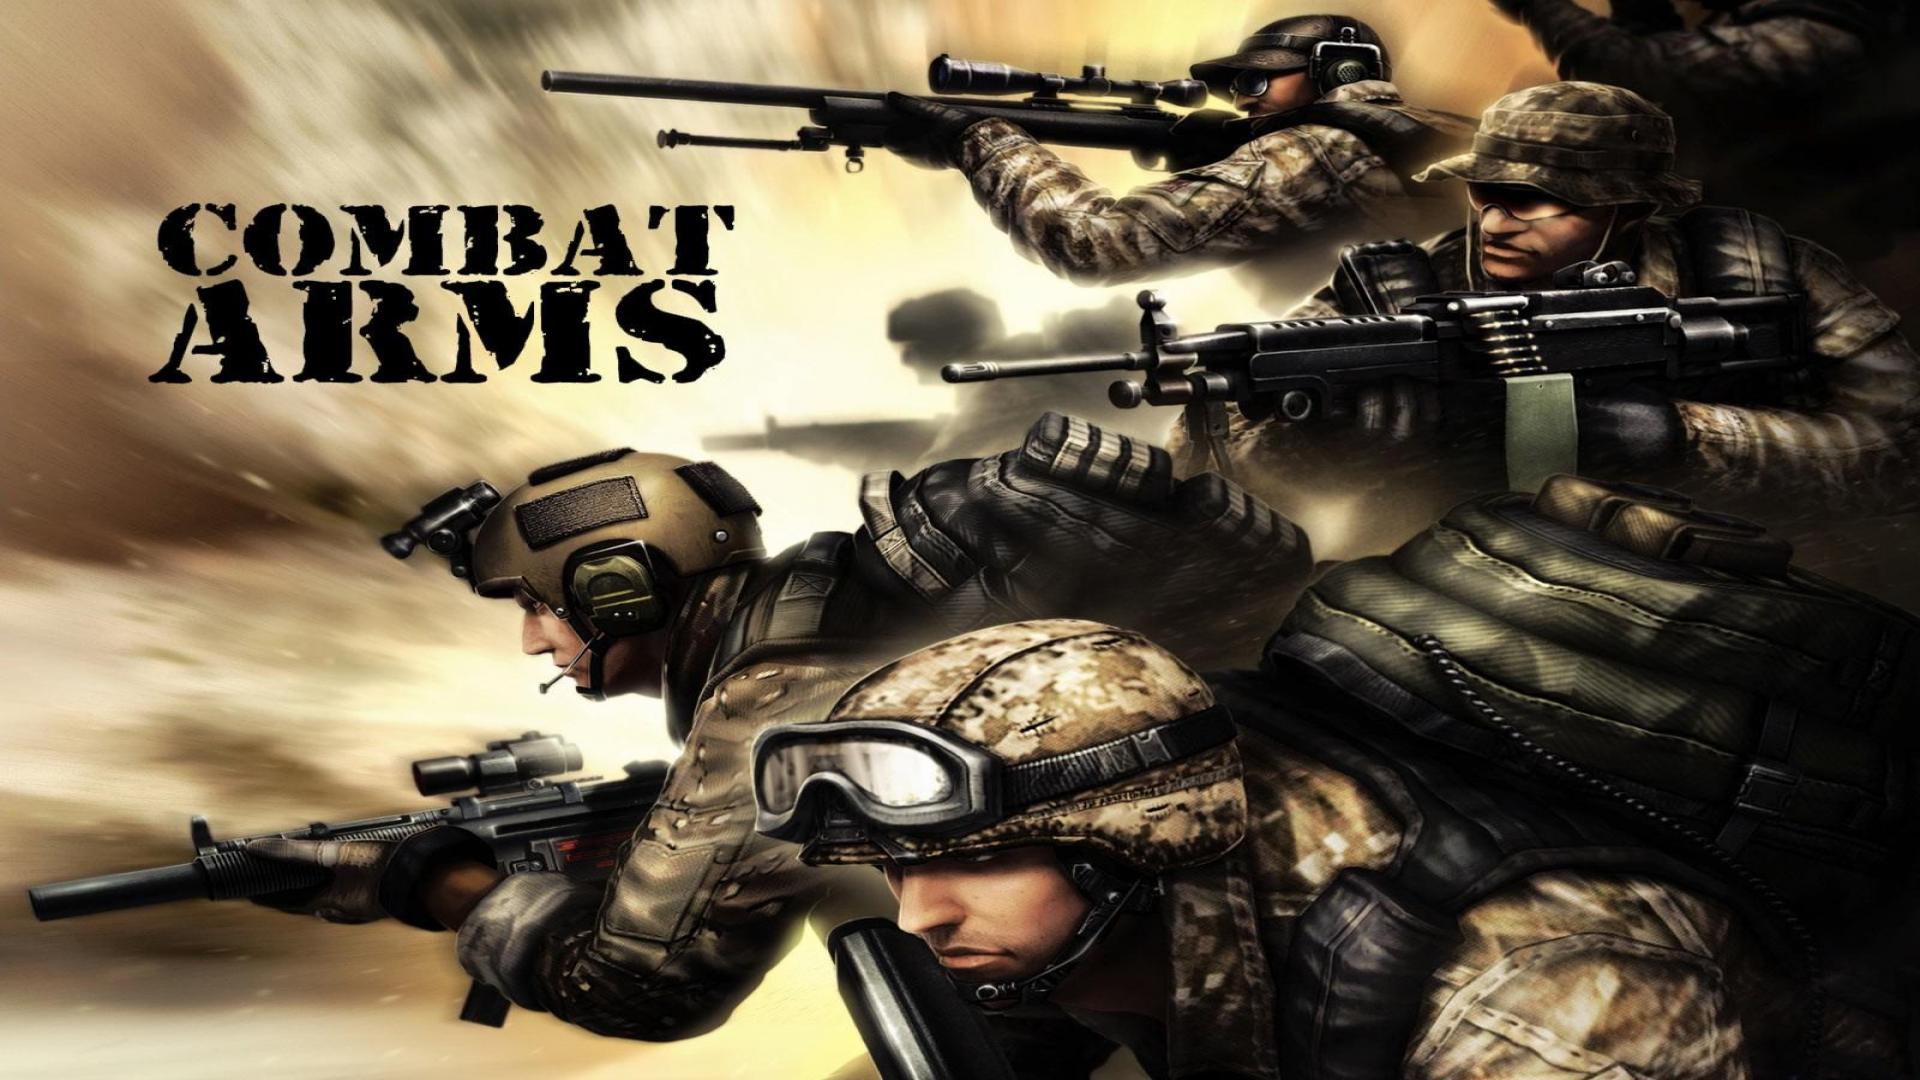 Комбат Армс. Combat Arms геймплей. F2000 комбат Армс. Combat Arms: Reloaded. Ares combat